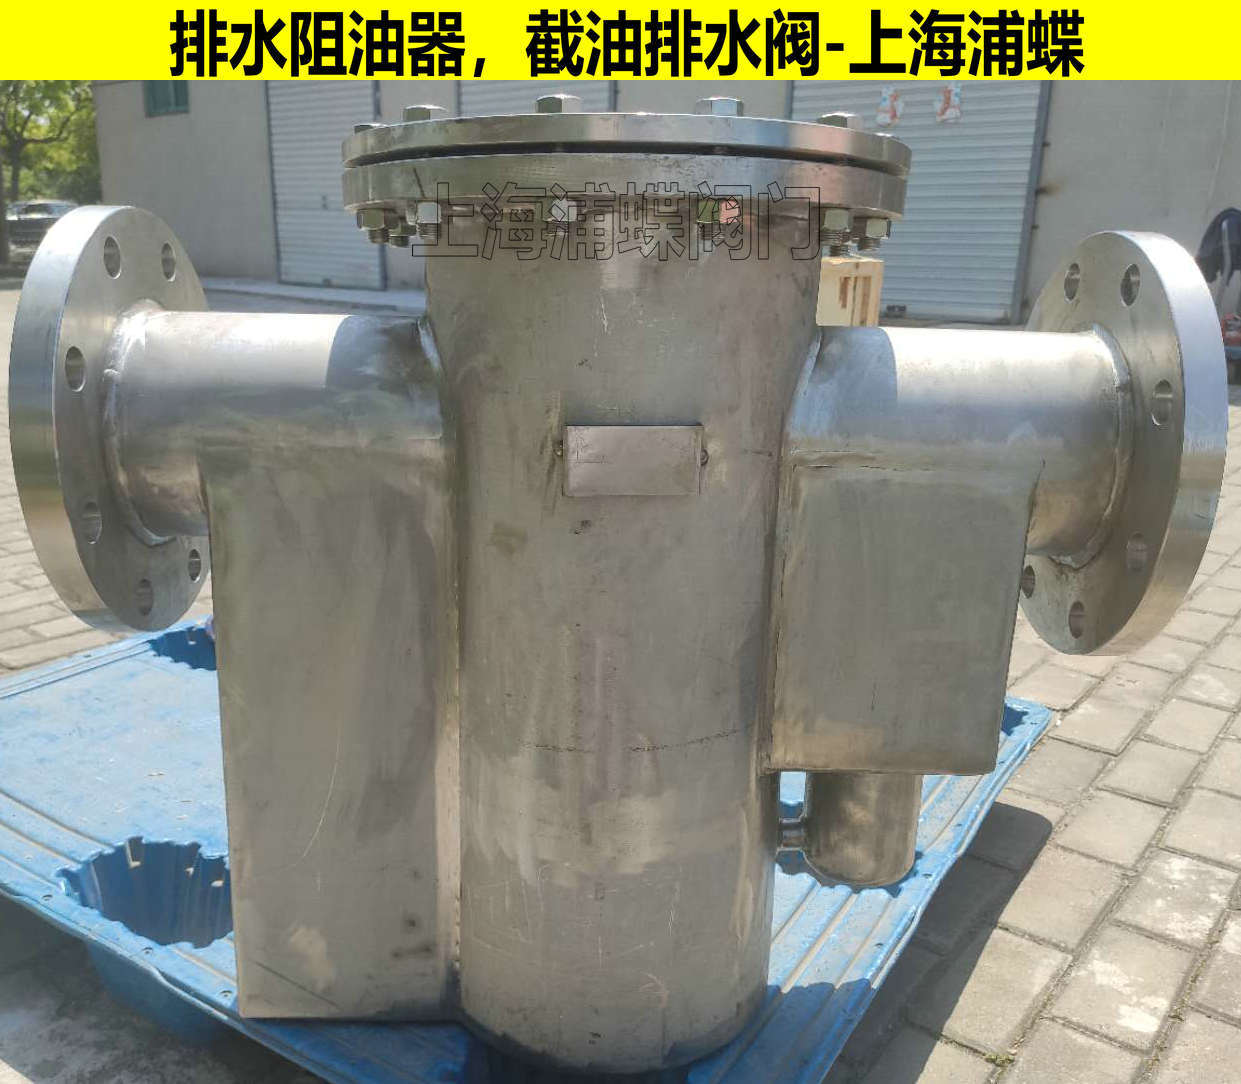 排水阻油器 JPS不锈钢排水阻油器 上海浦蝶品牌示例图2